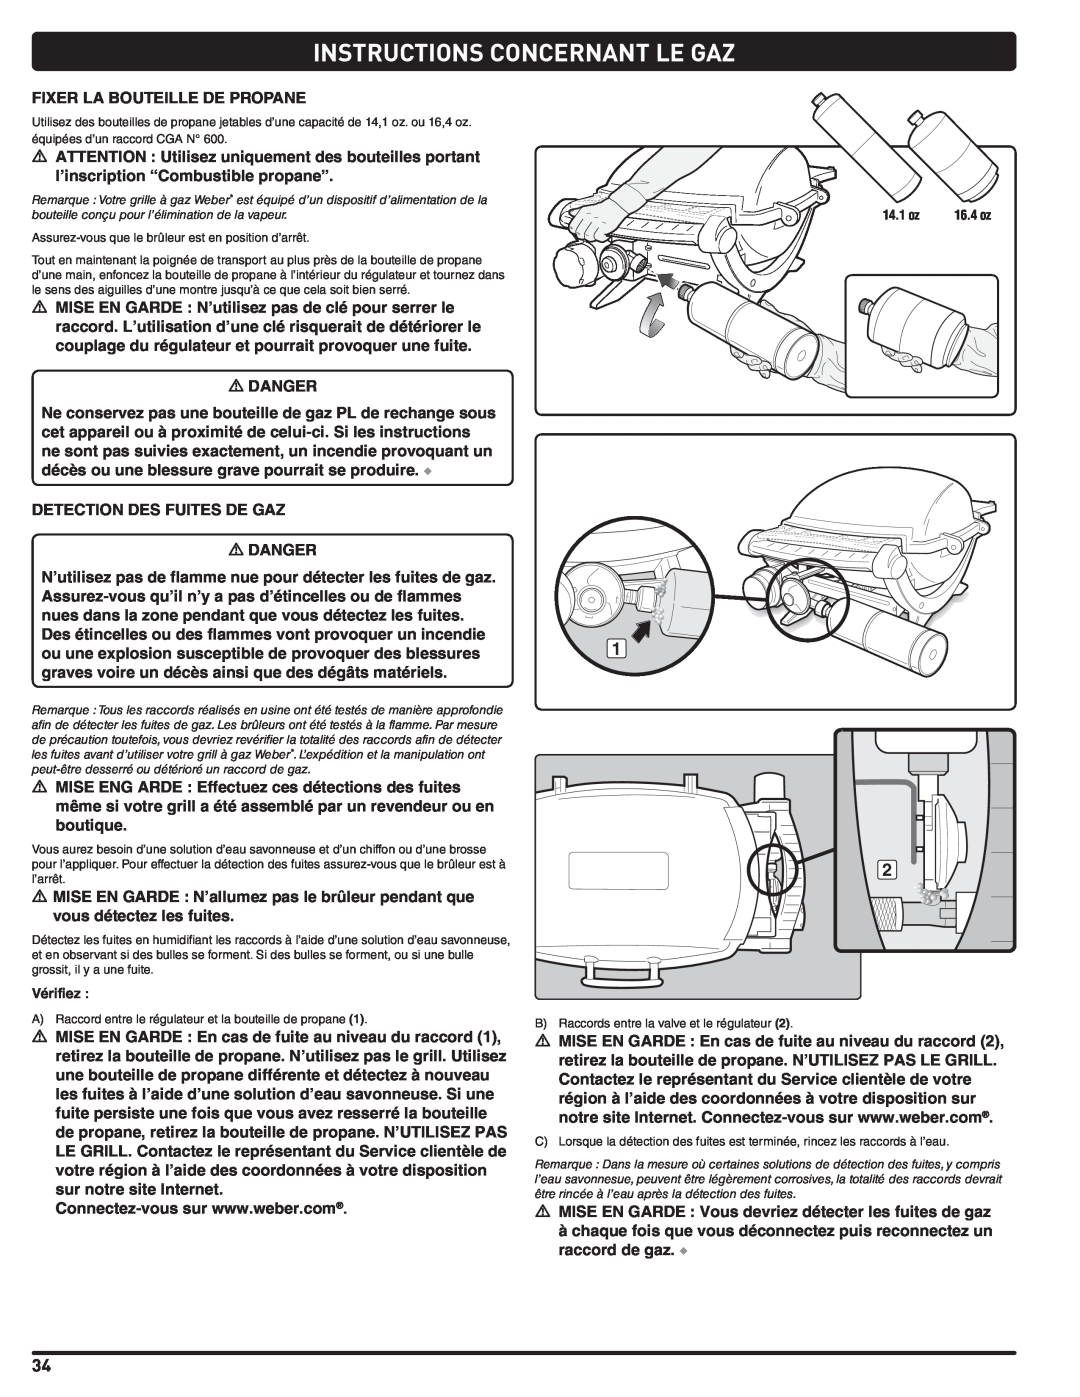 Weber 120, 100, LP GAS GRILL, 220, 200, 827020 instruction manual Instructions Concernant Le Gaz, Vérifiez 